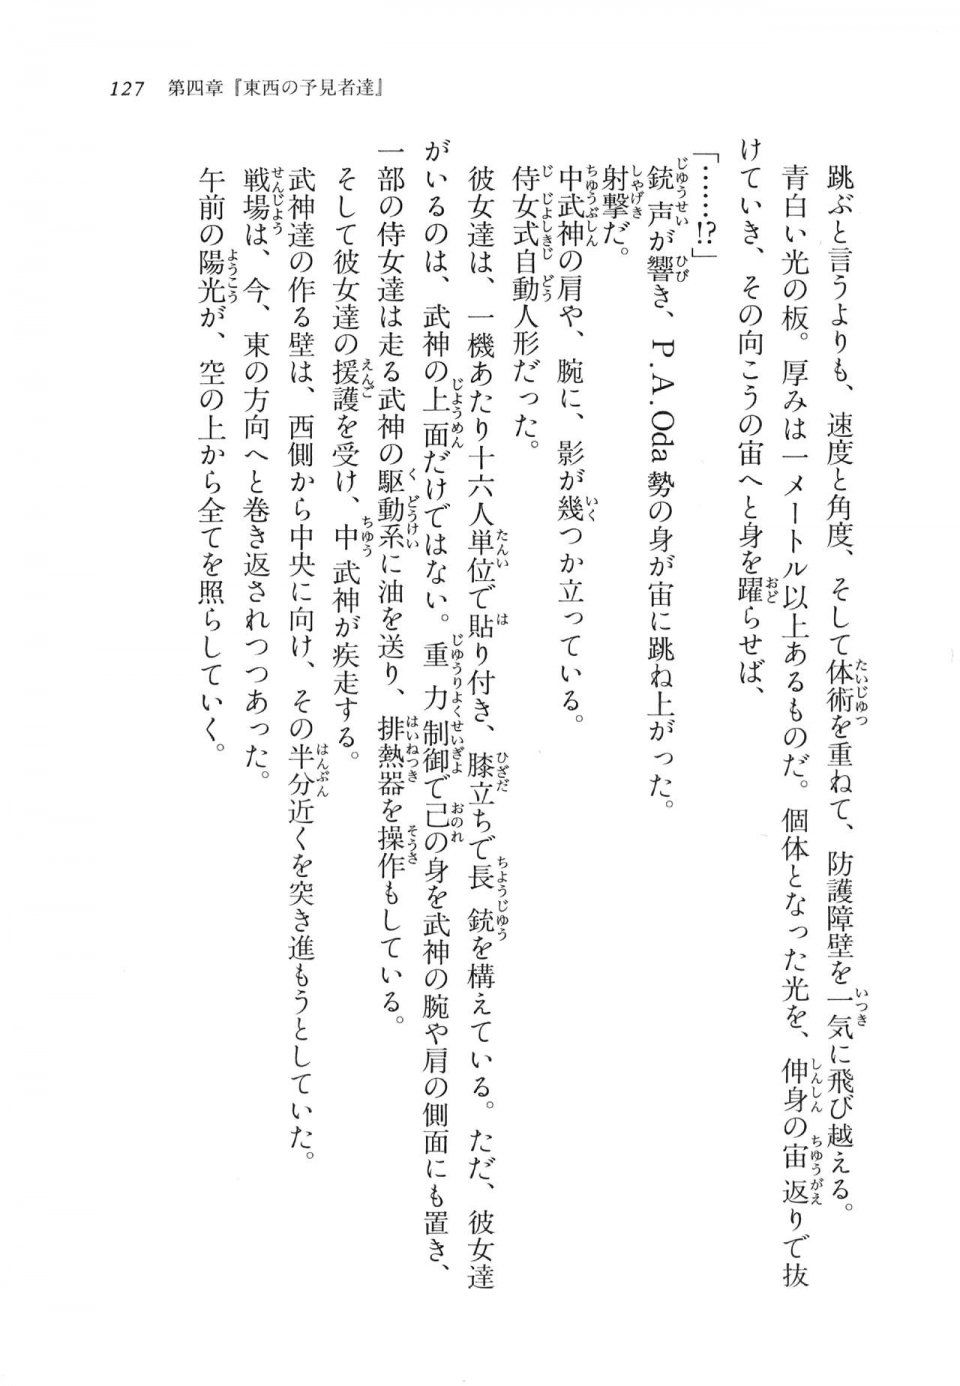 Kyoukai Senjou no Horizon LN Vol 11(5A) - Photo #127